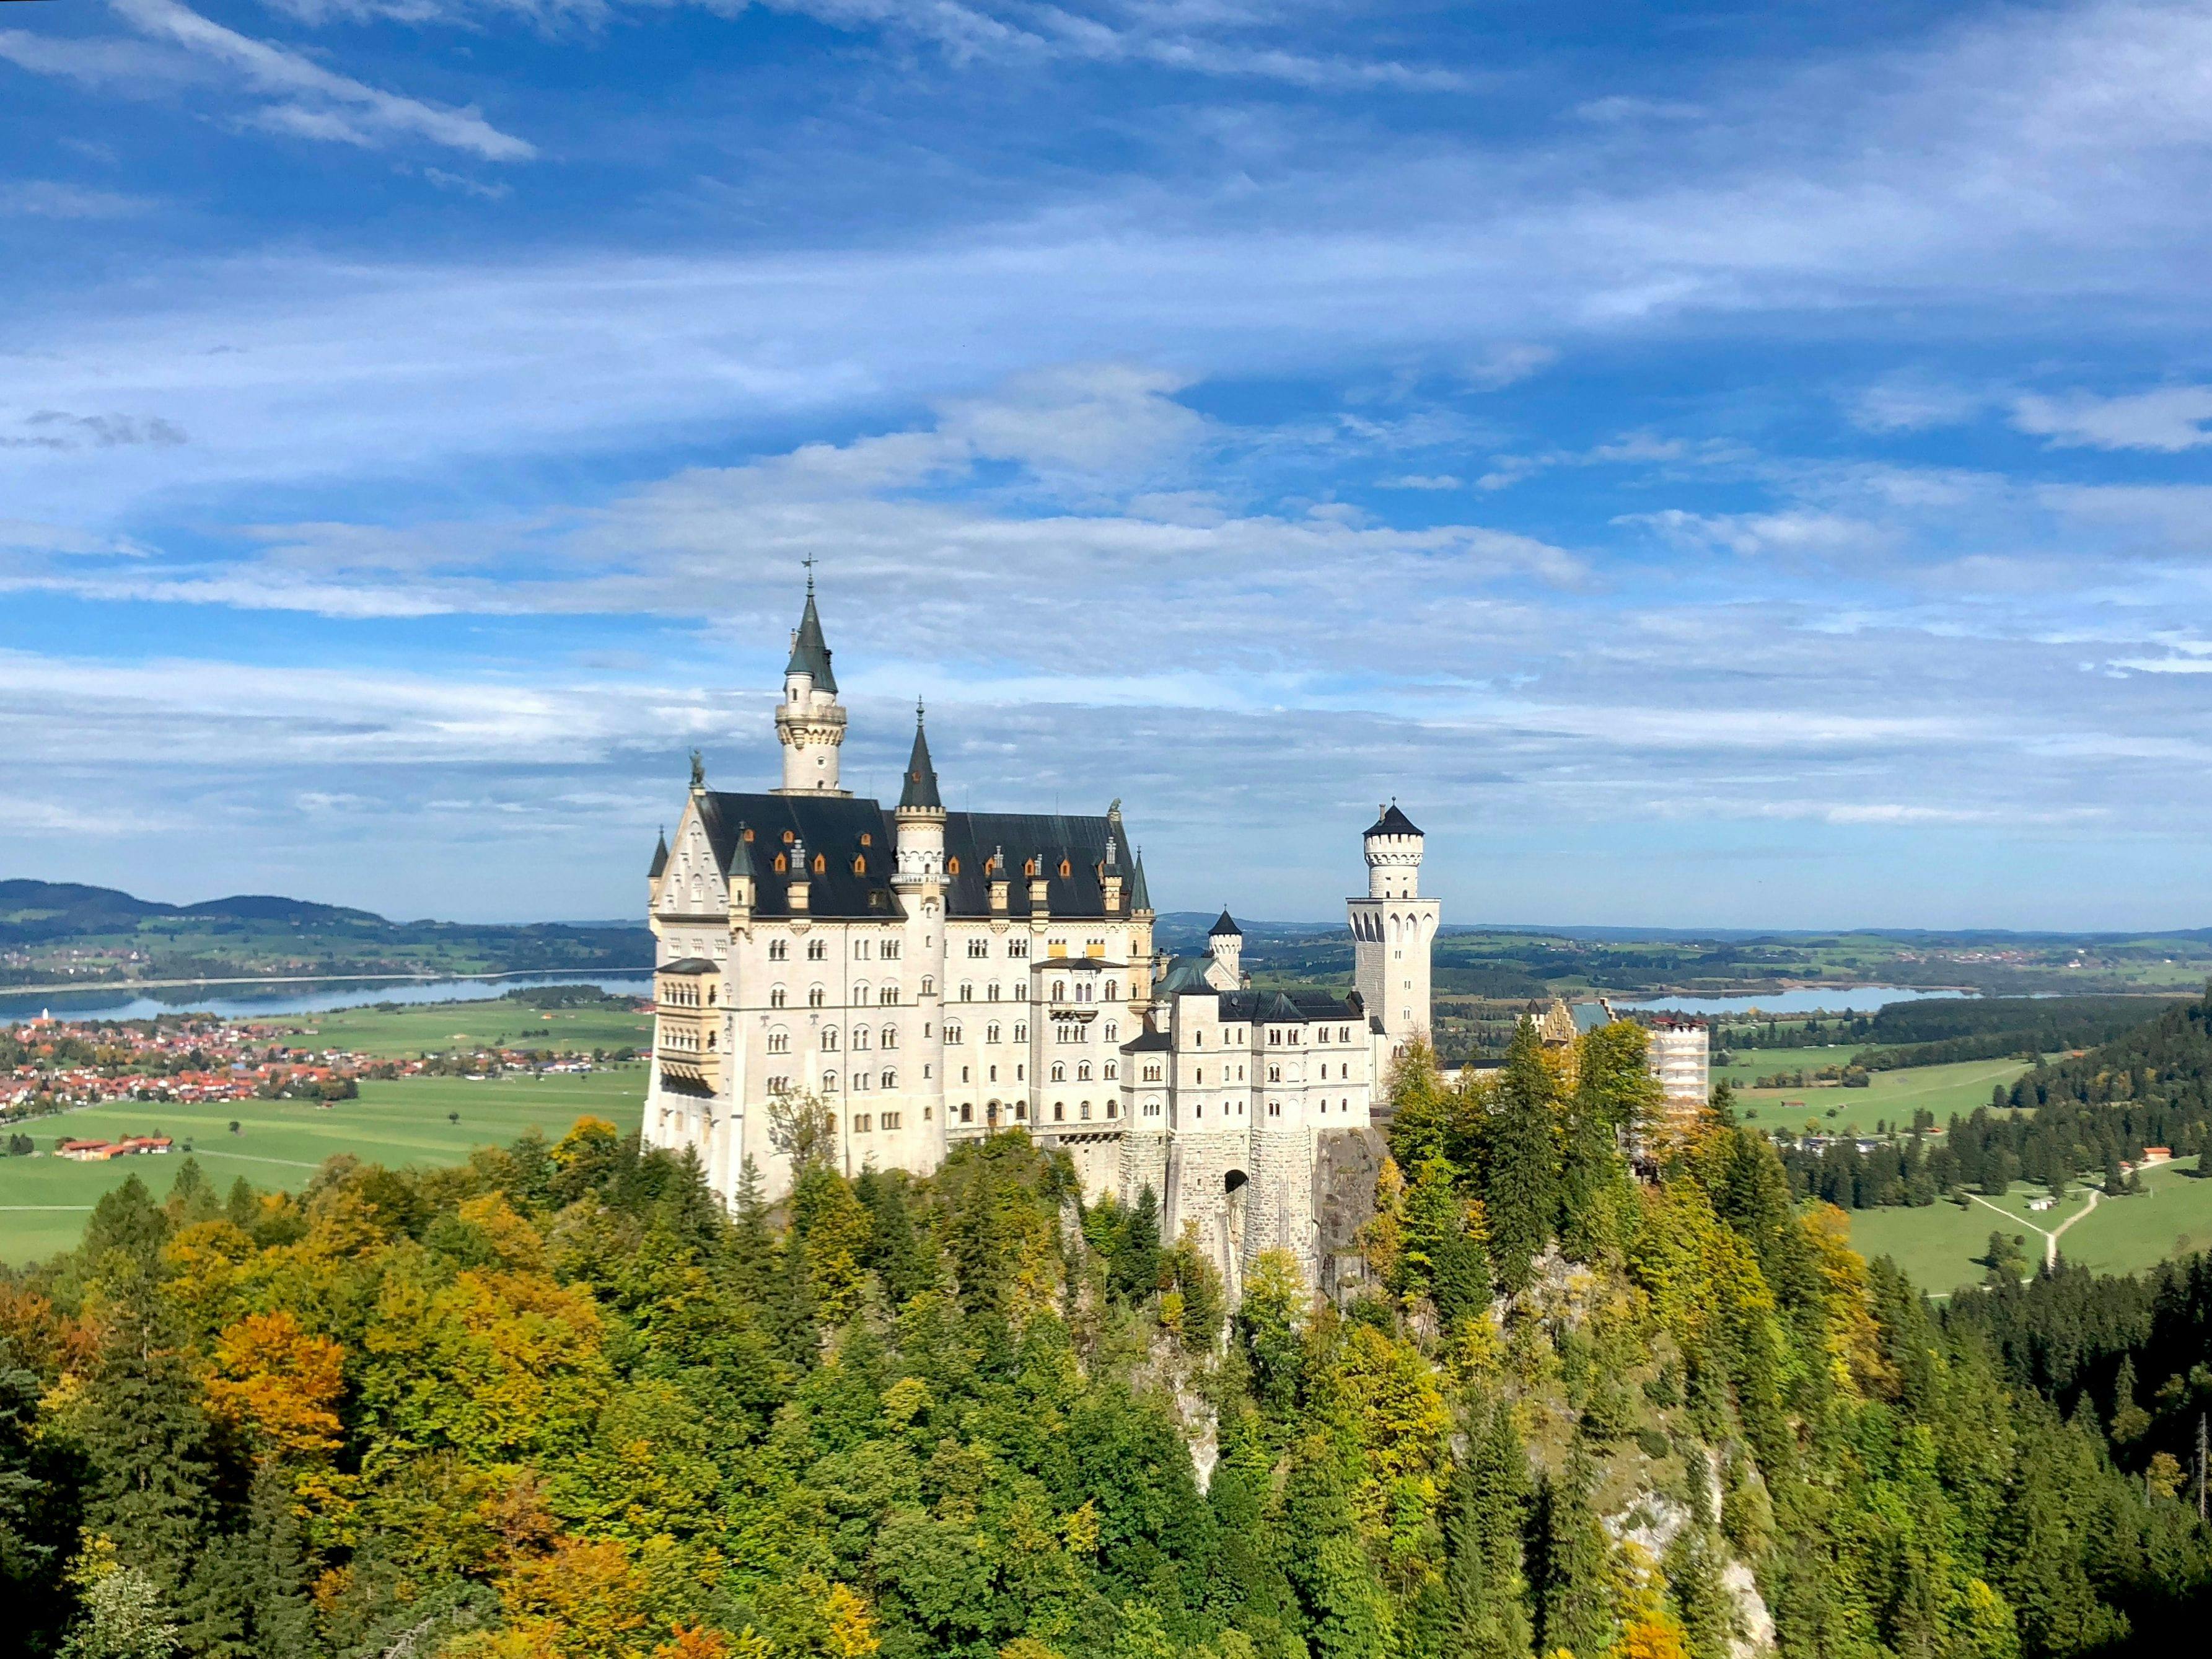 Historical Neuschwanstein castle in Germany.